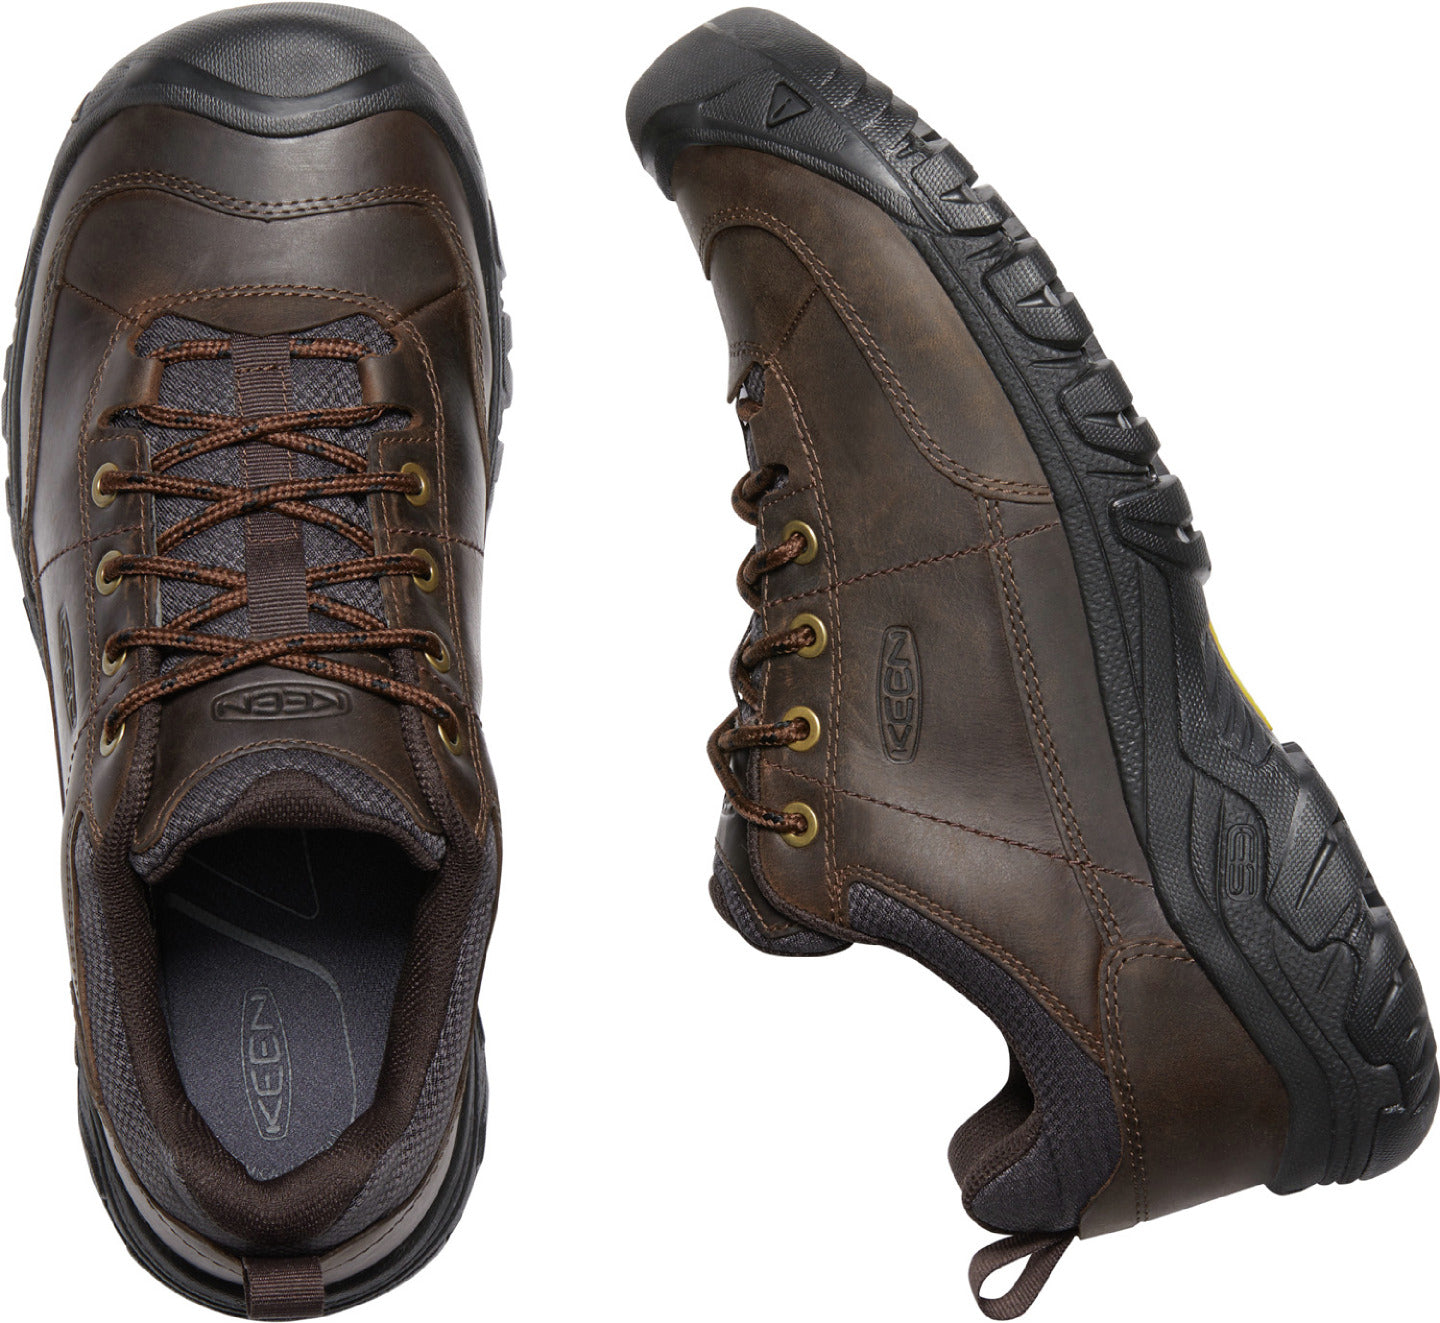 Men's Keen Targhee III Oxford Shoe Color: Dark Earth/Mulch